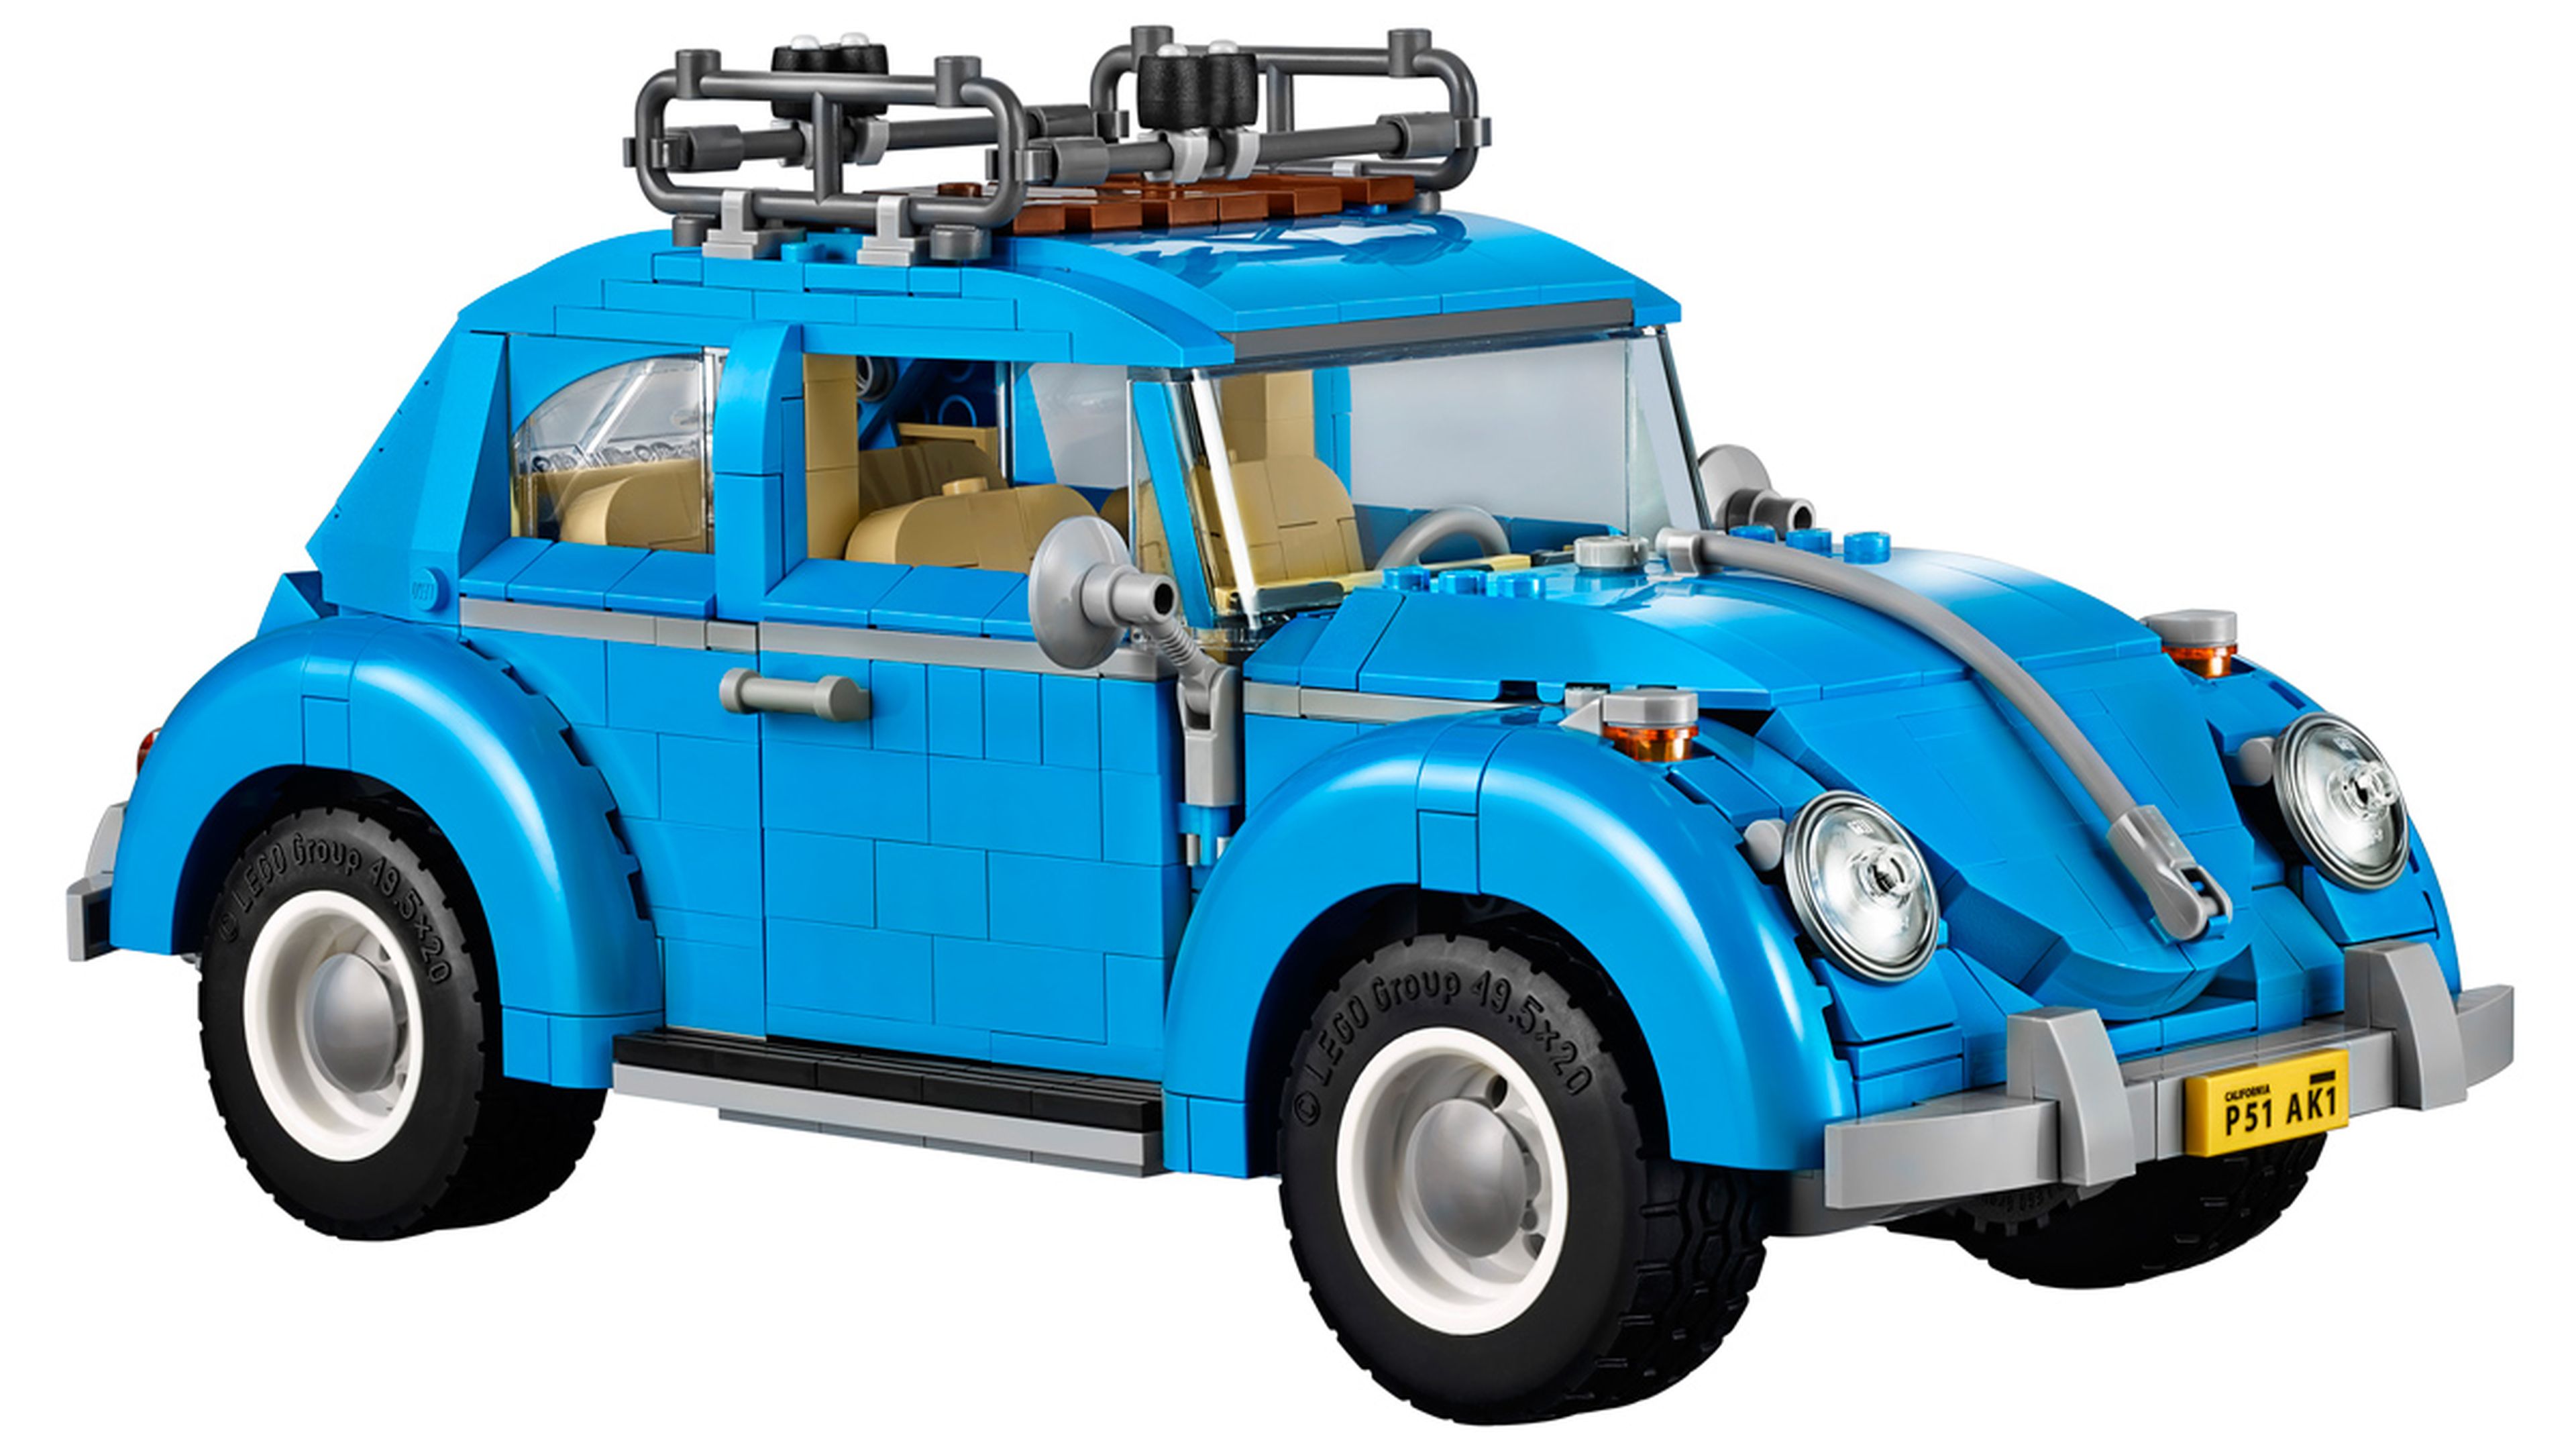 VW Beetle Lego (I)